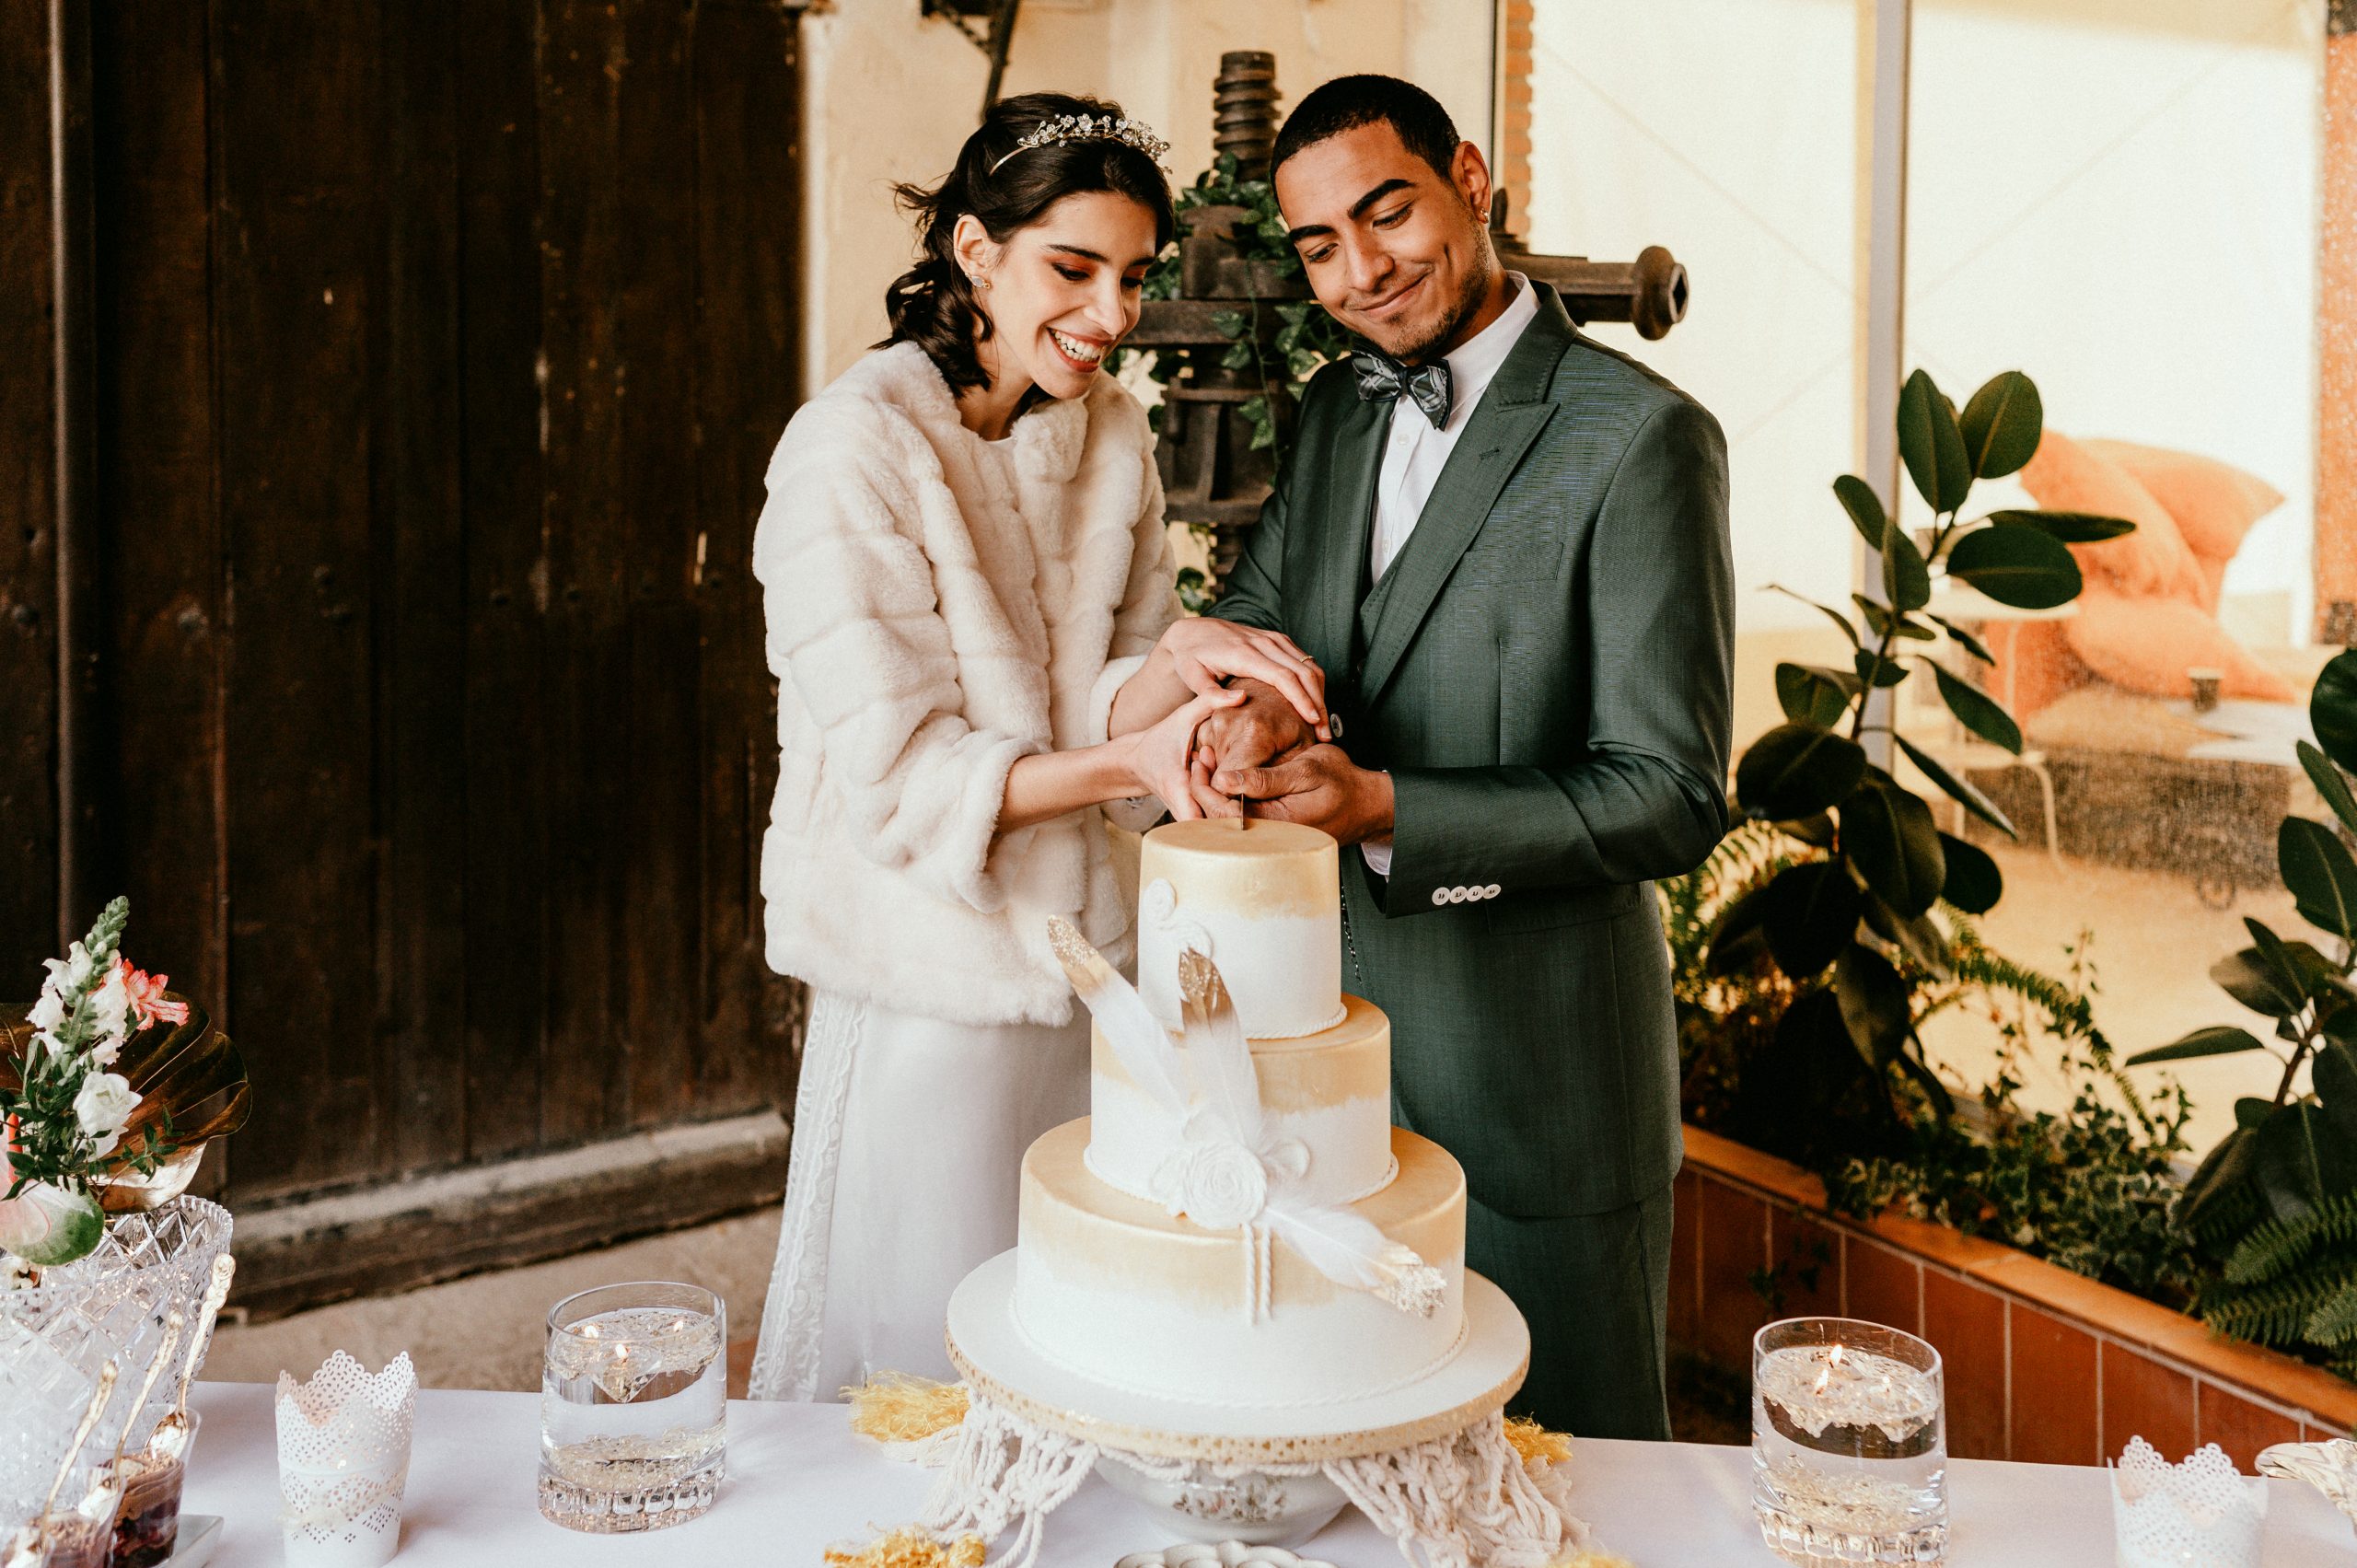 Soporte para tartas de estilo europeo, accesorios de boda, bandeja para  tartas, plato de pastel de patas altas, decoración de mesa de postre,  soporte